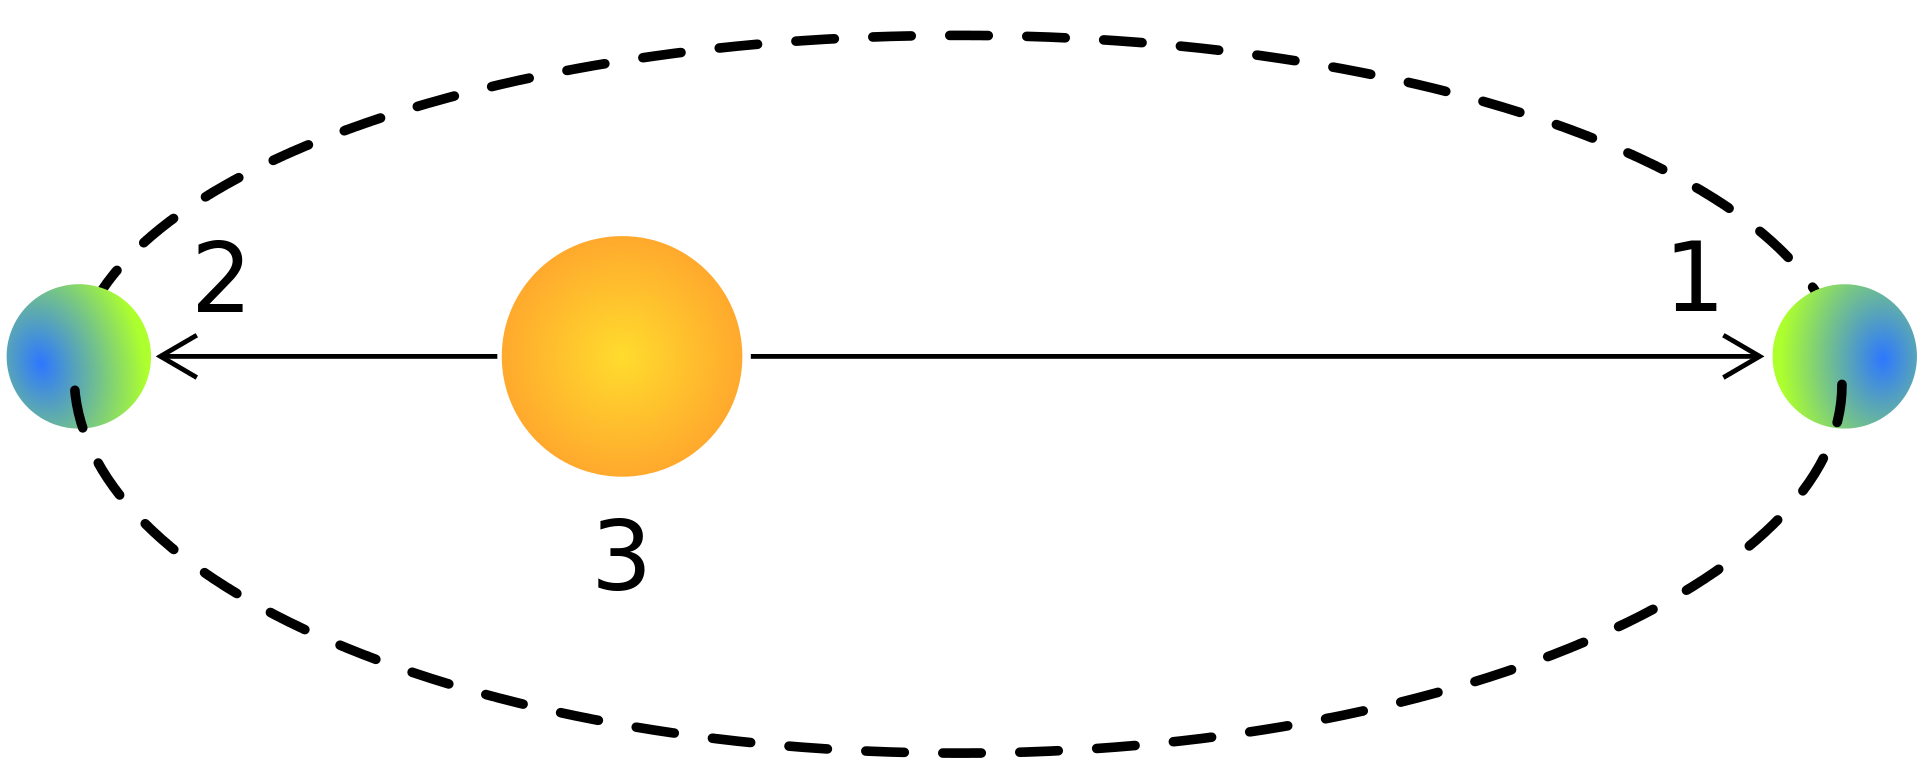 1. 在遠日點的行星（7月）。2. 在近日點的行星（1月）。3. 太陽。圖示未依照比例。（圖片來源/wiki）